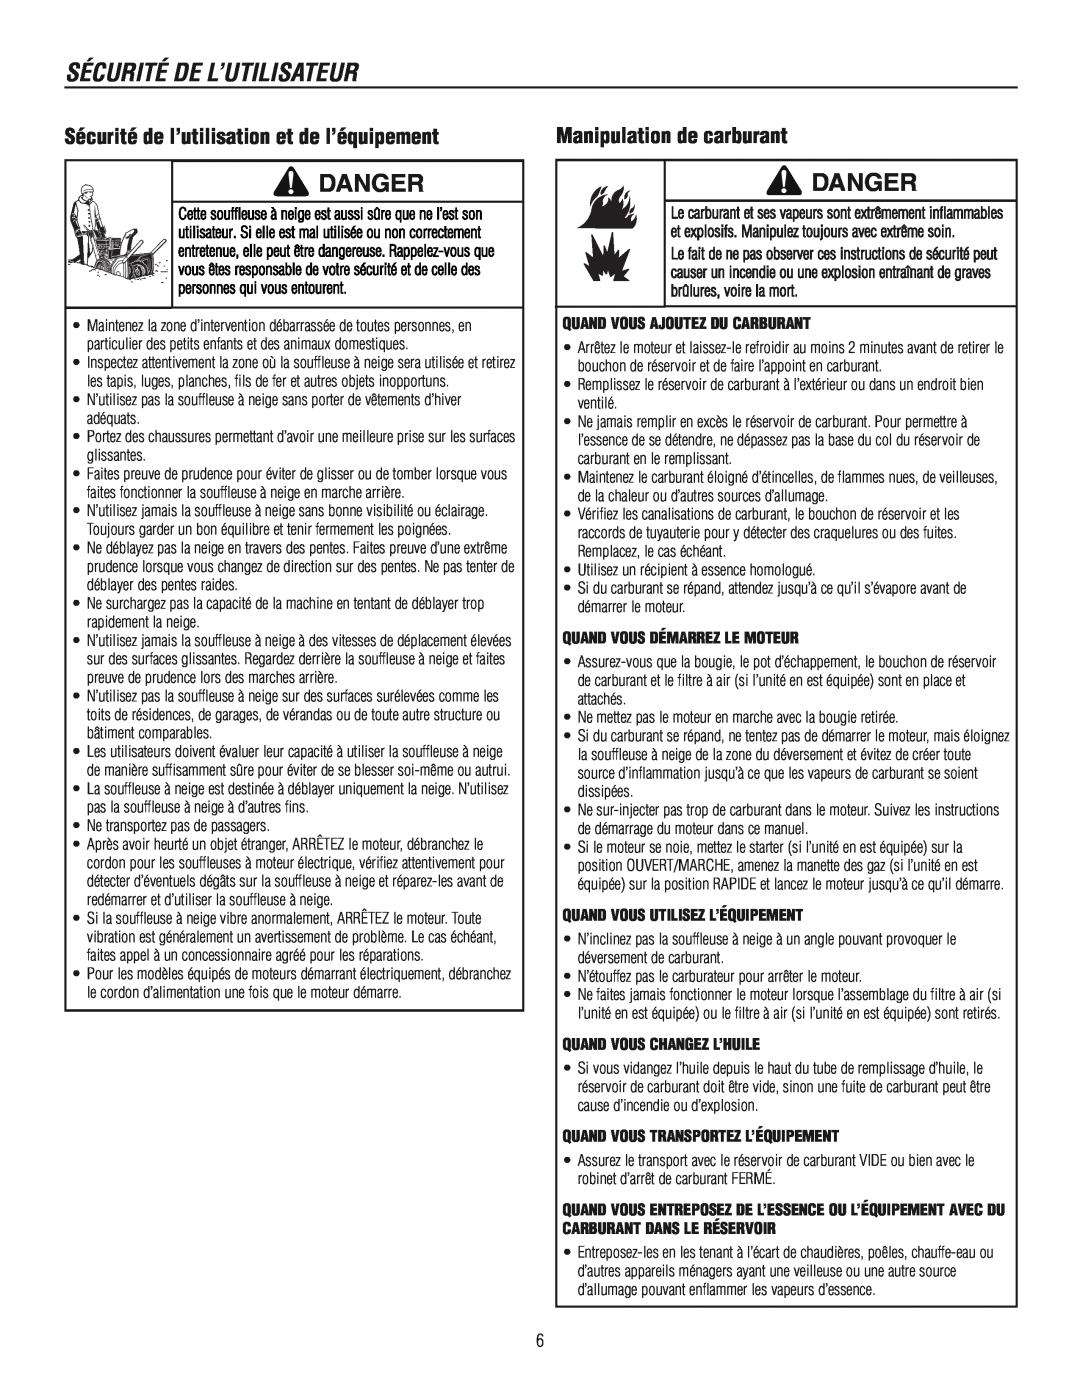 Murray 1695722 Sécurité de l’utilisation et de l’équipement, Manipulation de carburant, Sécurité De L’Utilisateur, Danger 